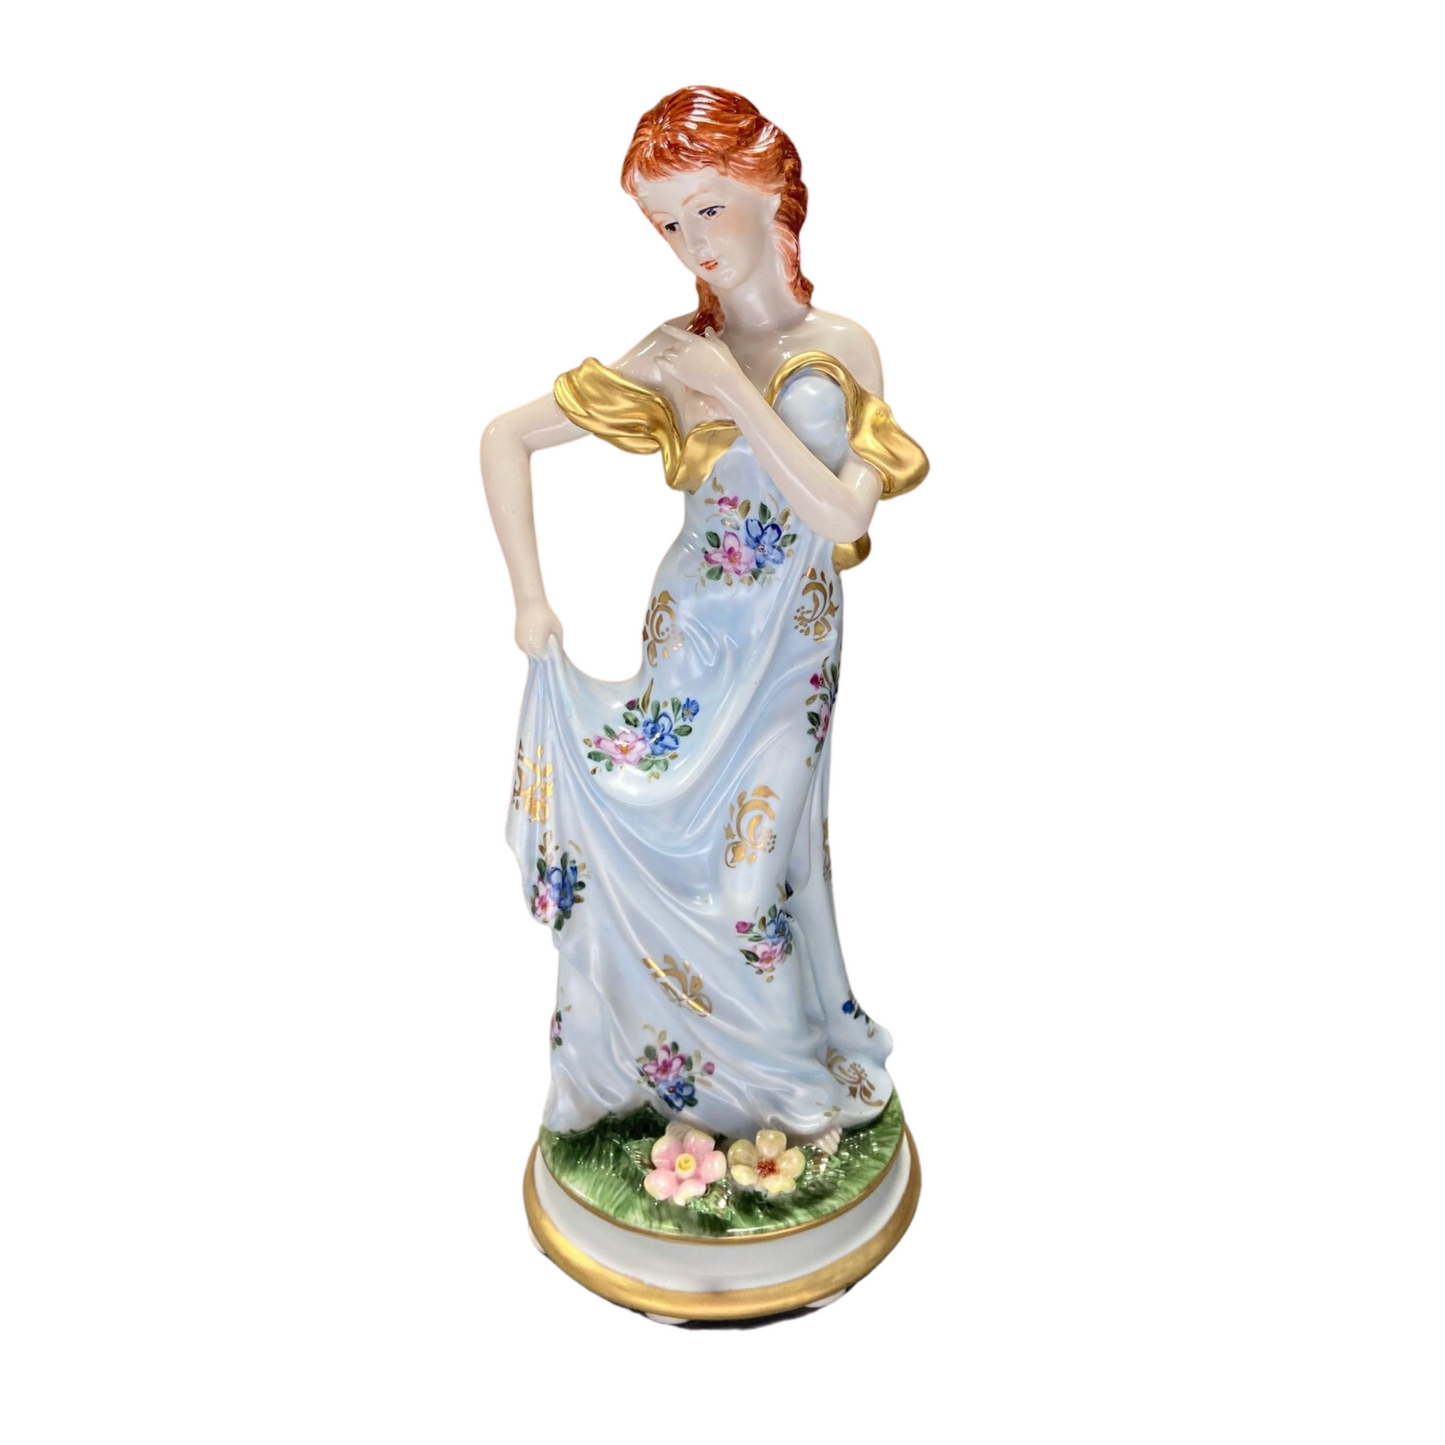 Figura de porcelana Mujer con vestido azul y dorado